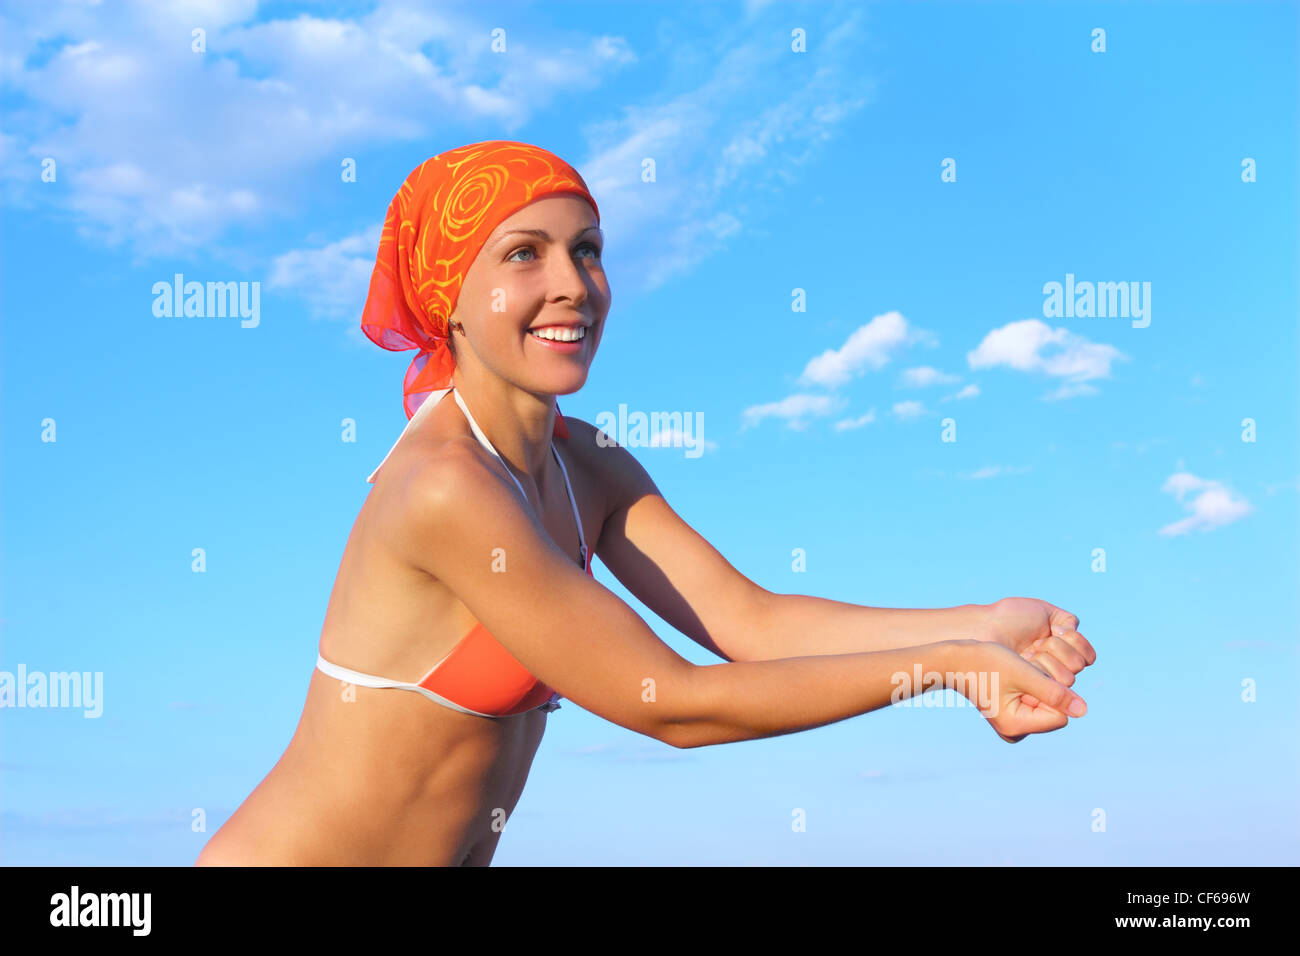 beauty woman in orange bikini and bandana playing volleyball, beat pose, blue sky Stock Photo